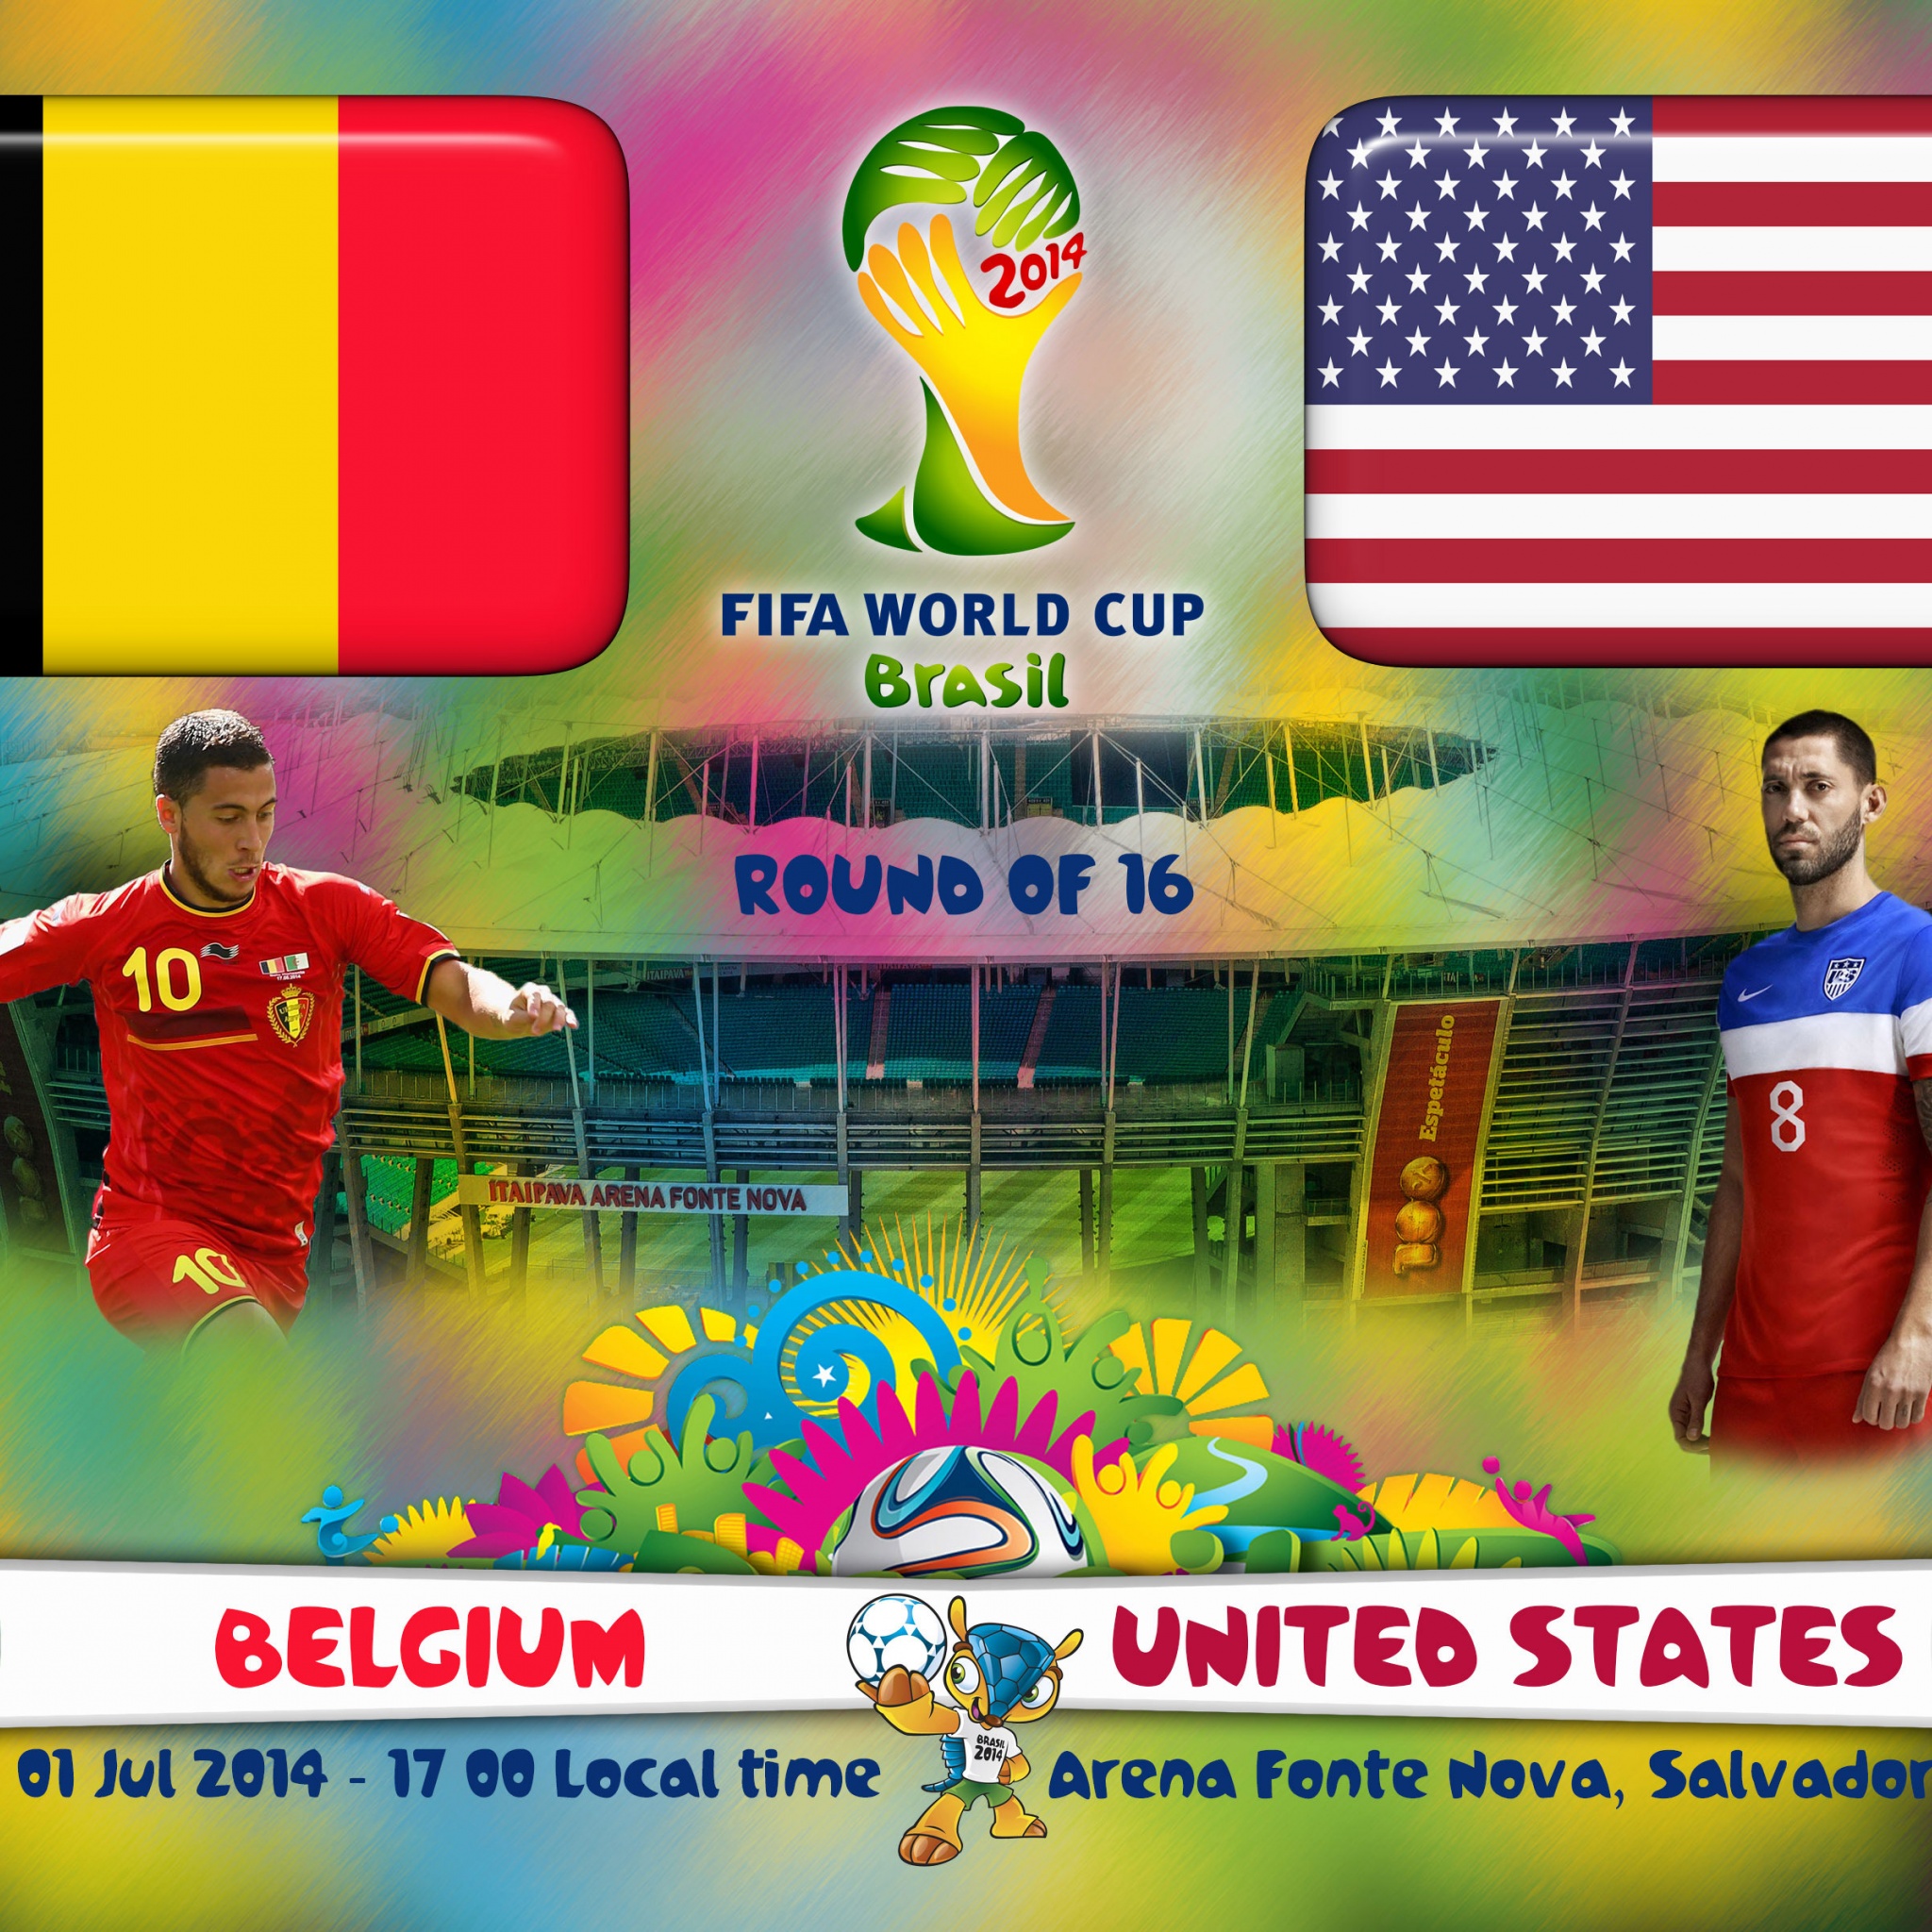 Belgium Vs United States WC 2014